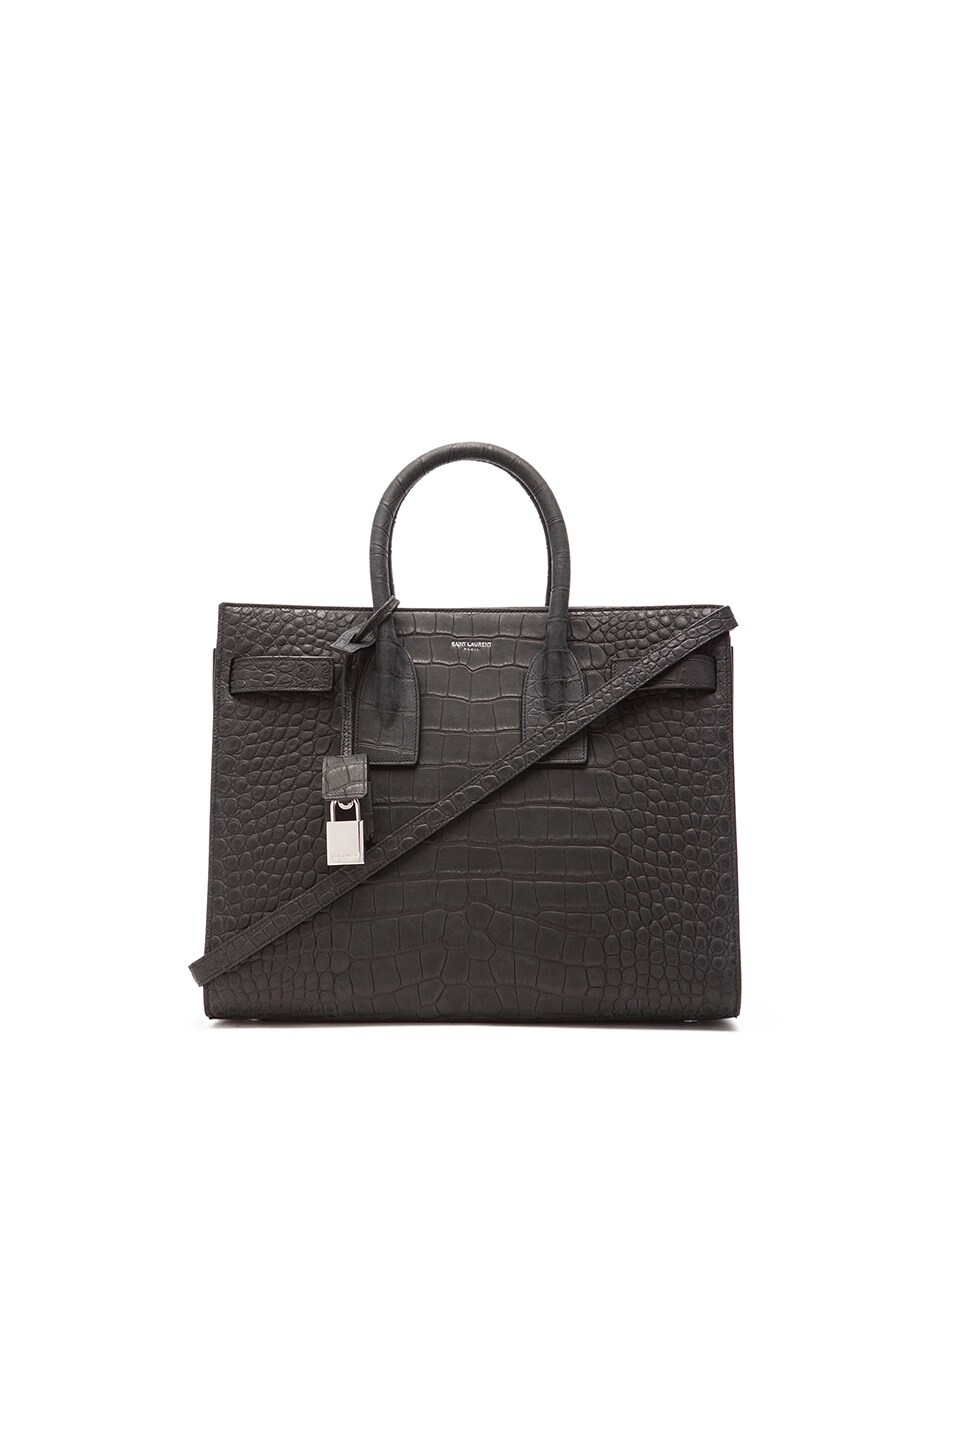 Image 1 of Saint Laurent Small Sac De Jour Embossed Carryall Bag in Croc Black